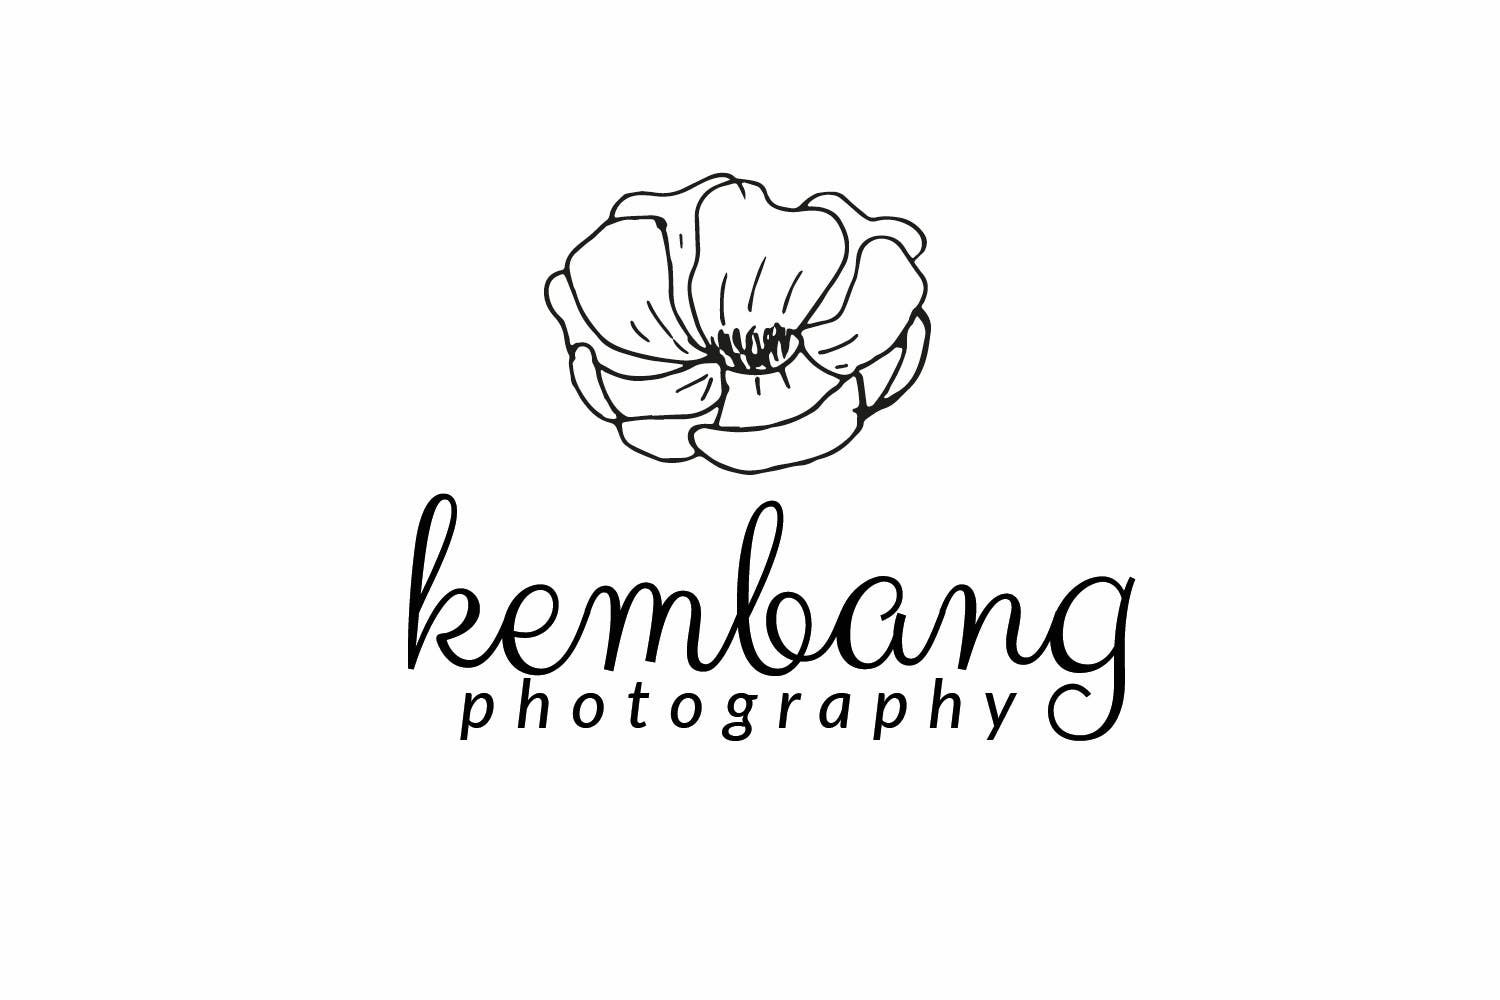 花卉几何图形摄影品牌Logo设计第一素材精选模板 Flower Photography Logo插图(1)